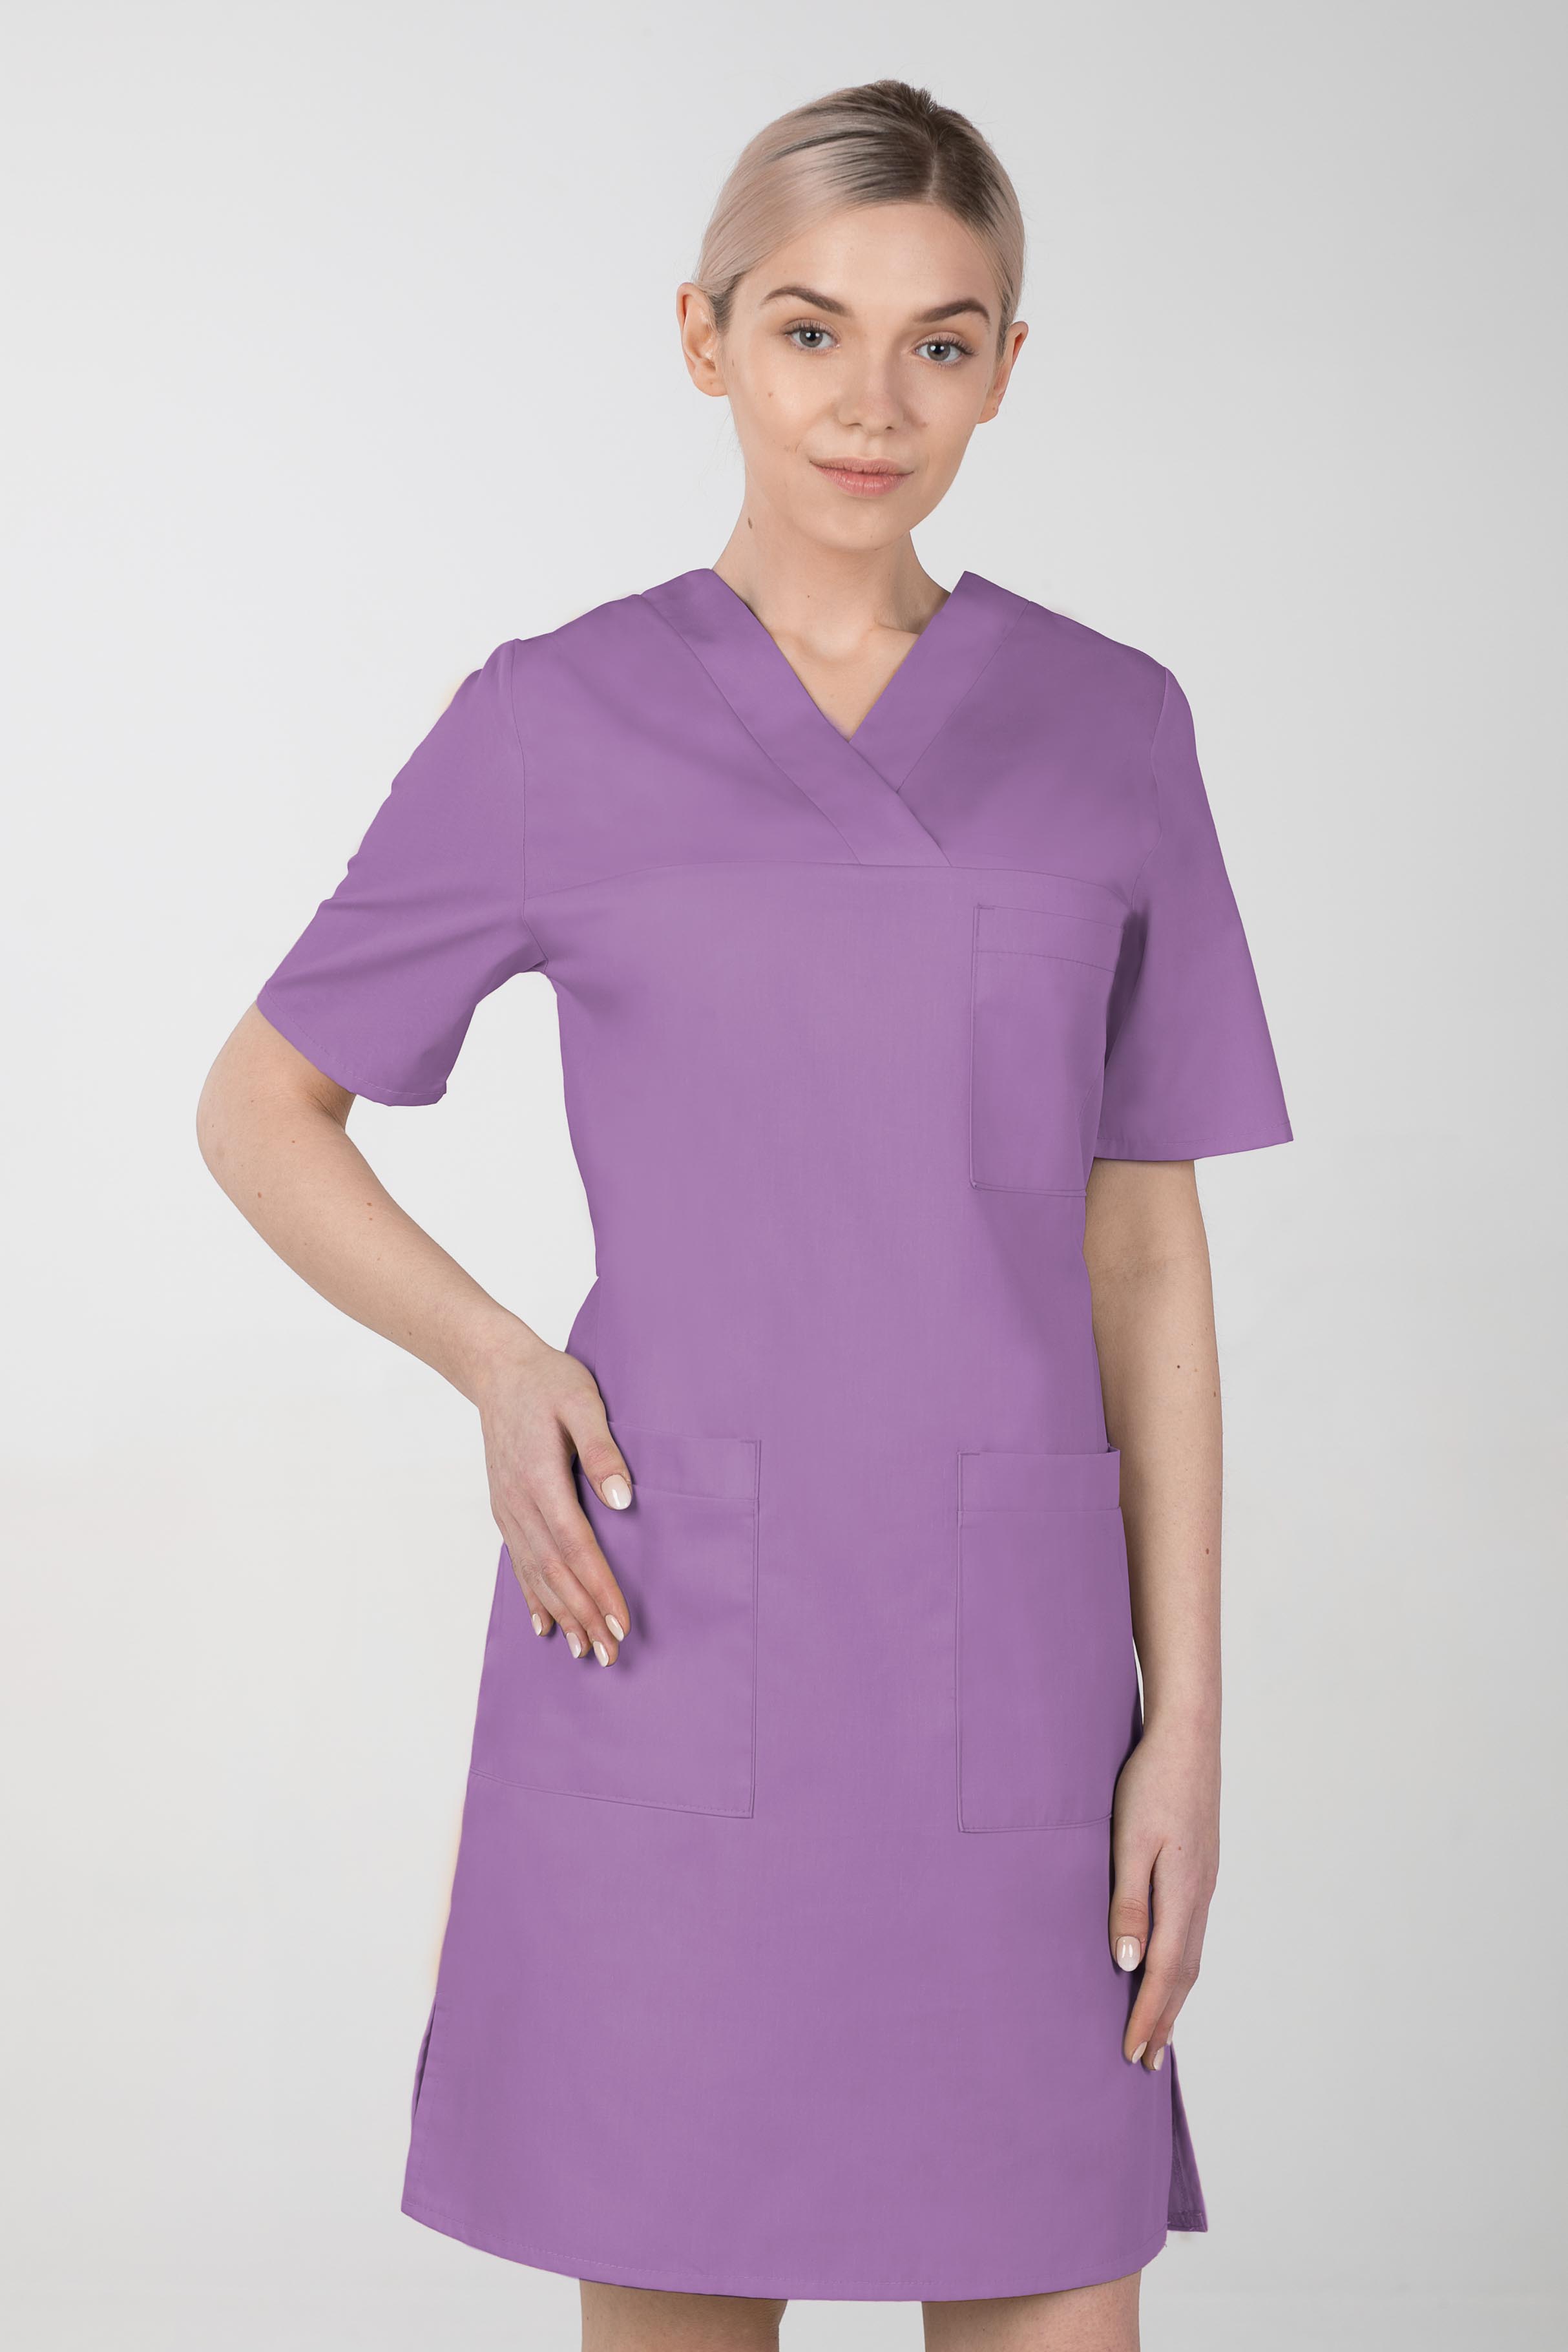 Dámské zdravotnické šaty M-076F, fialová